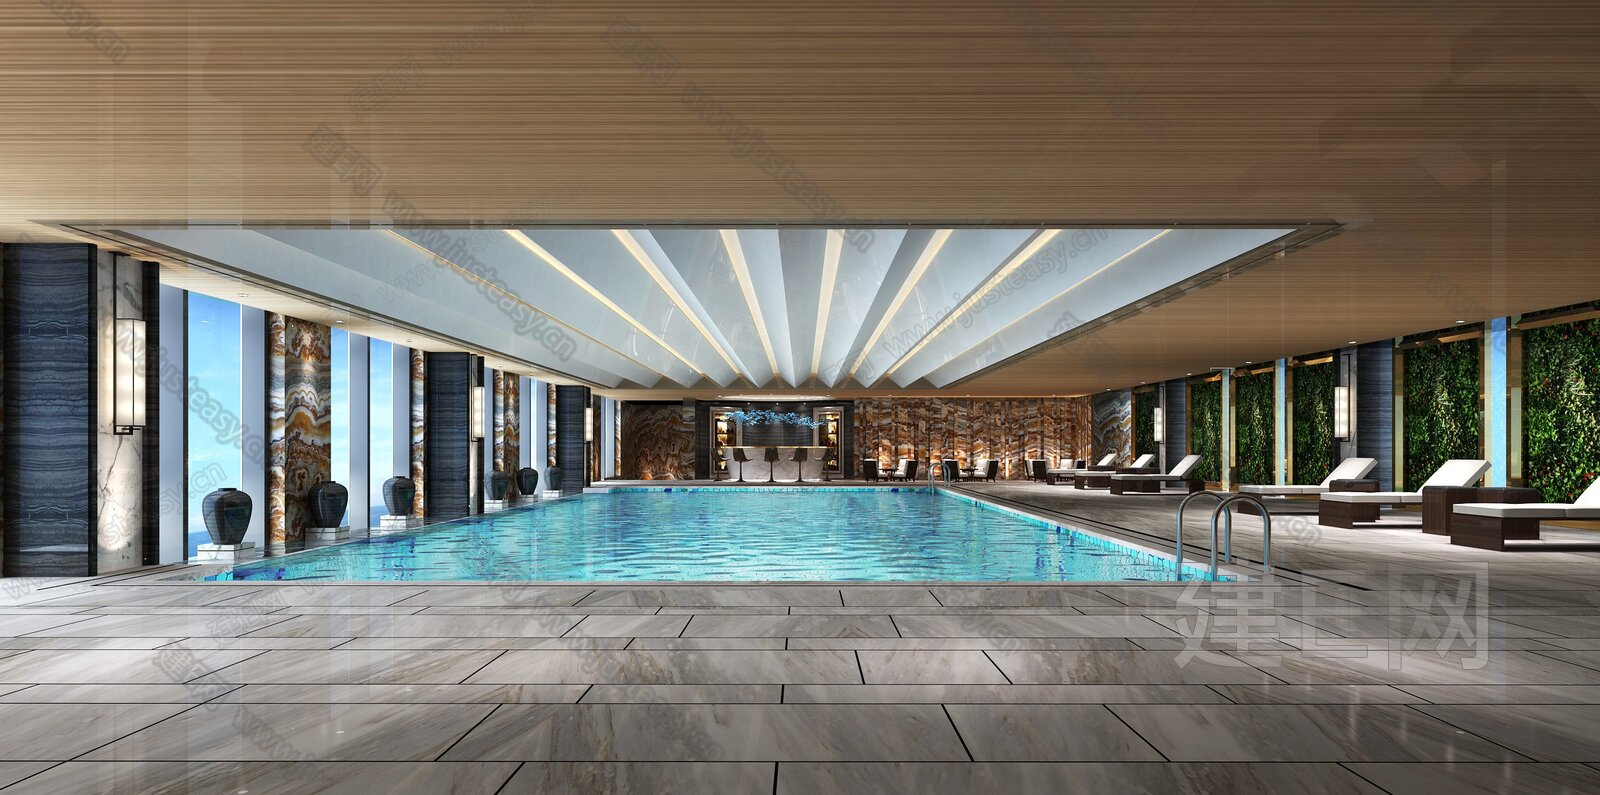 酒店游泳池 - 图片欣赏 - 成都瑞鲸机电设备有限公司